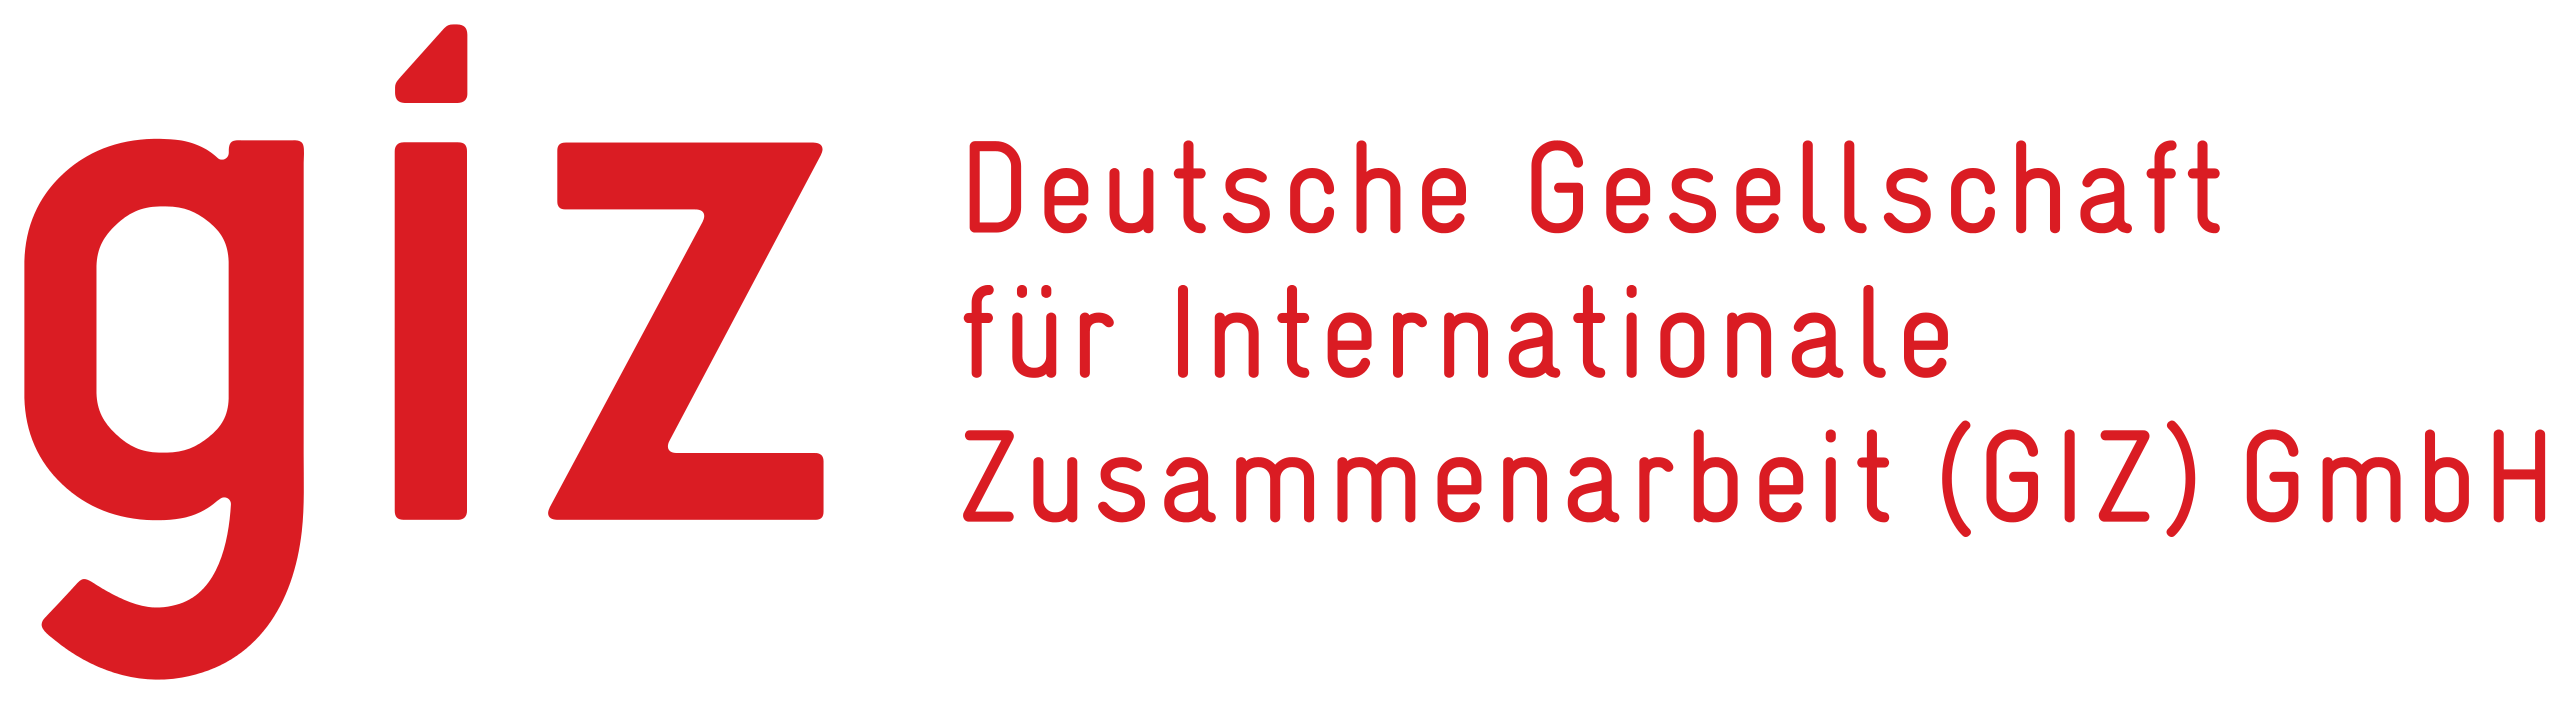 Deutsche_Gesellschaft_für_Internationale_Zusammenarbeit_Logo.svg.png